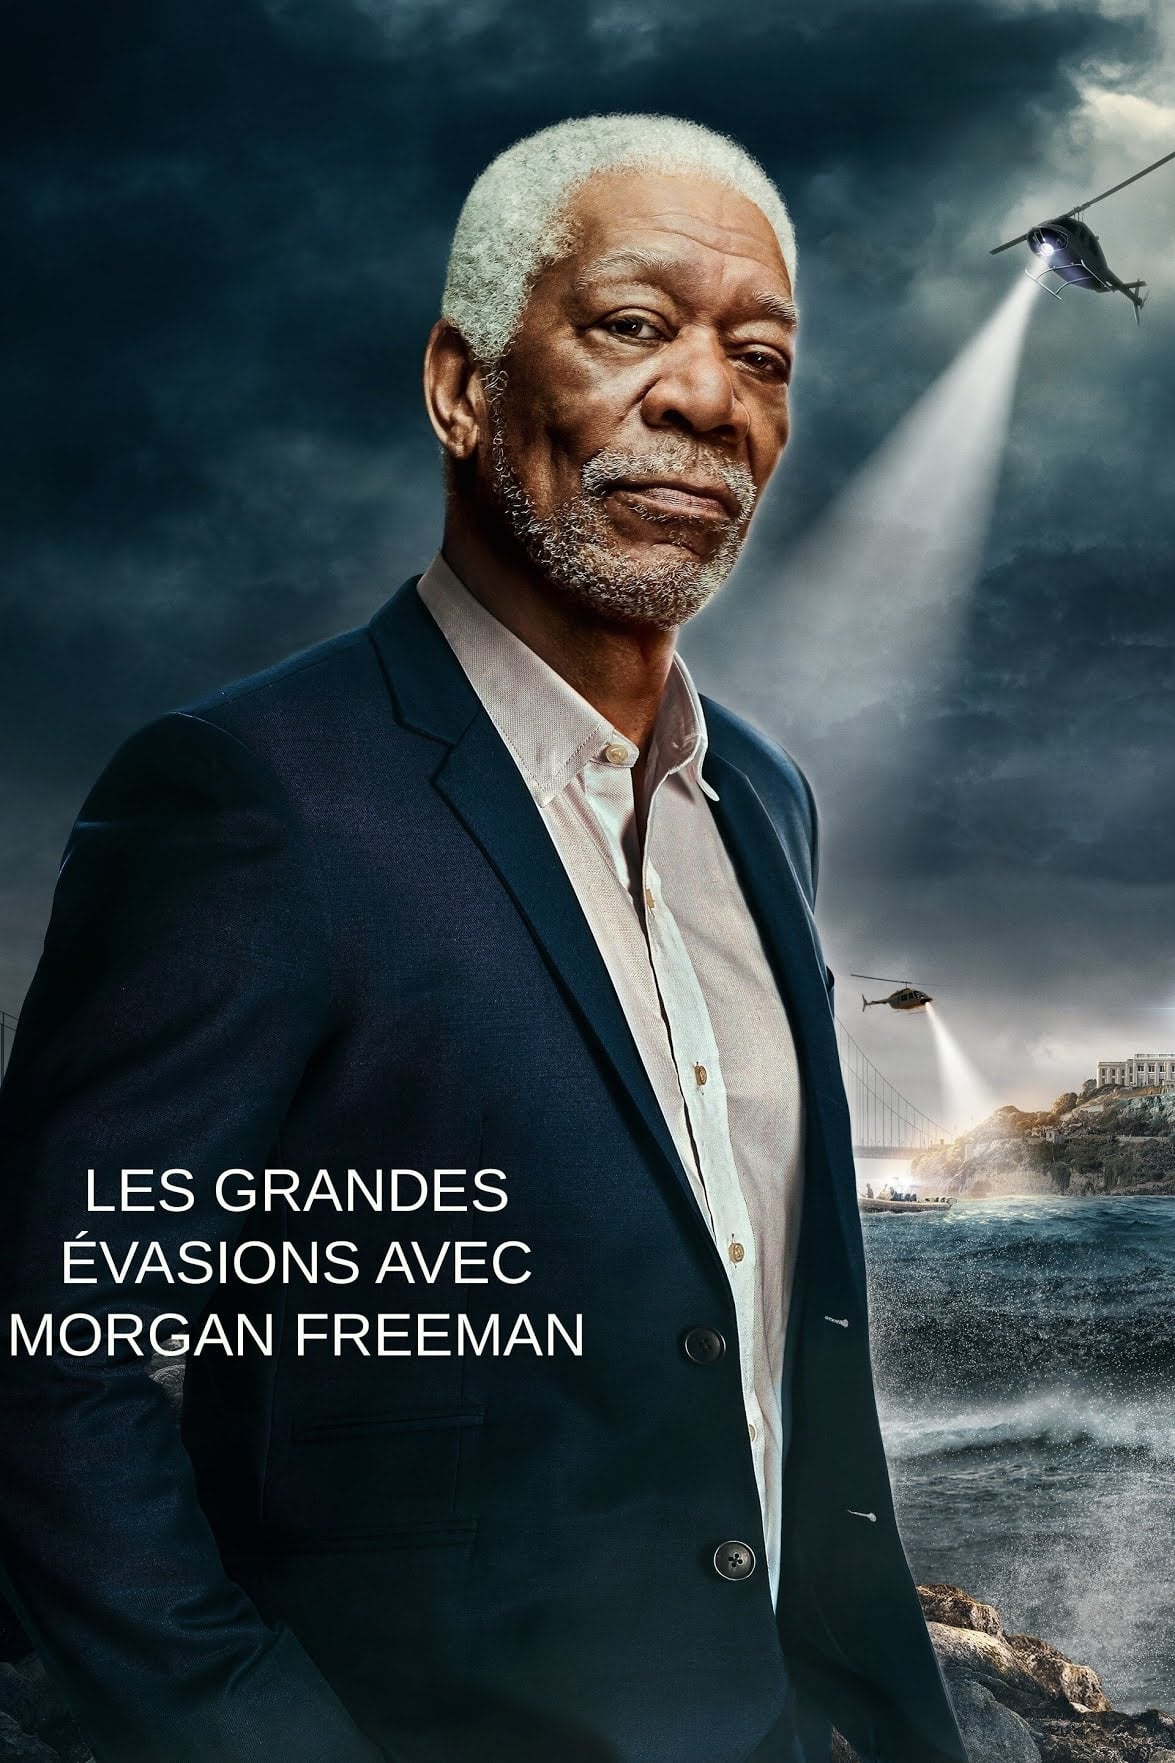 Les grandes evasions avec Morgan Freeman